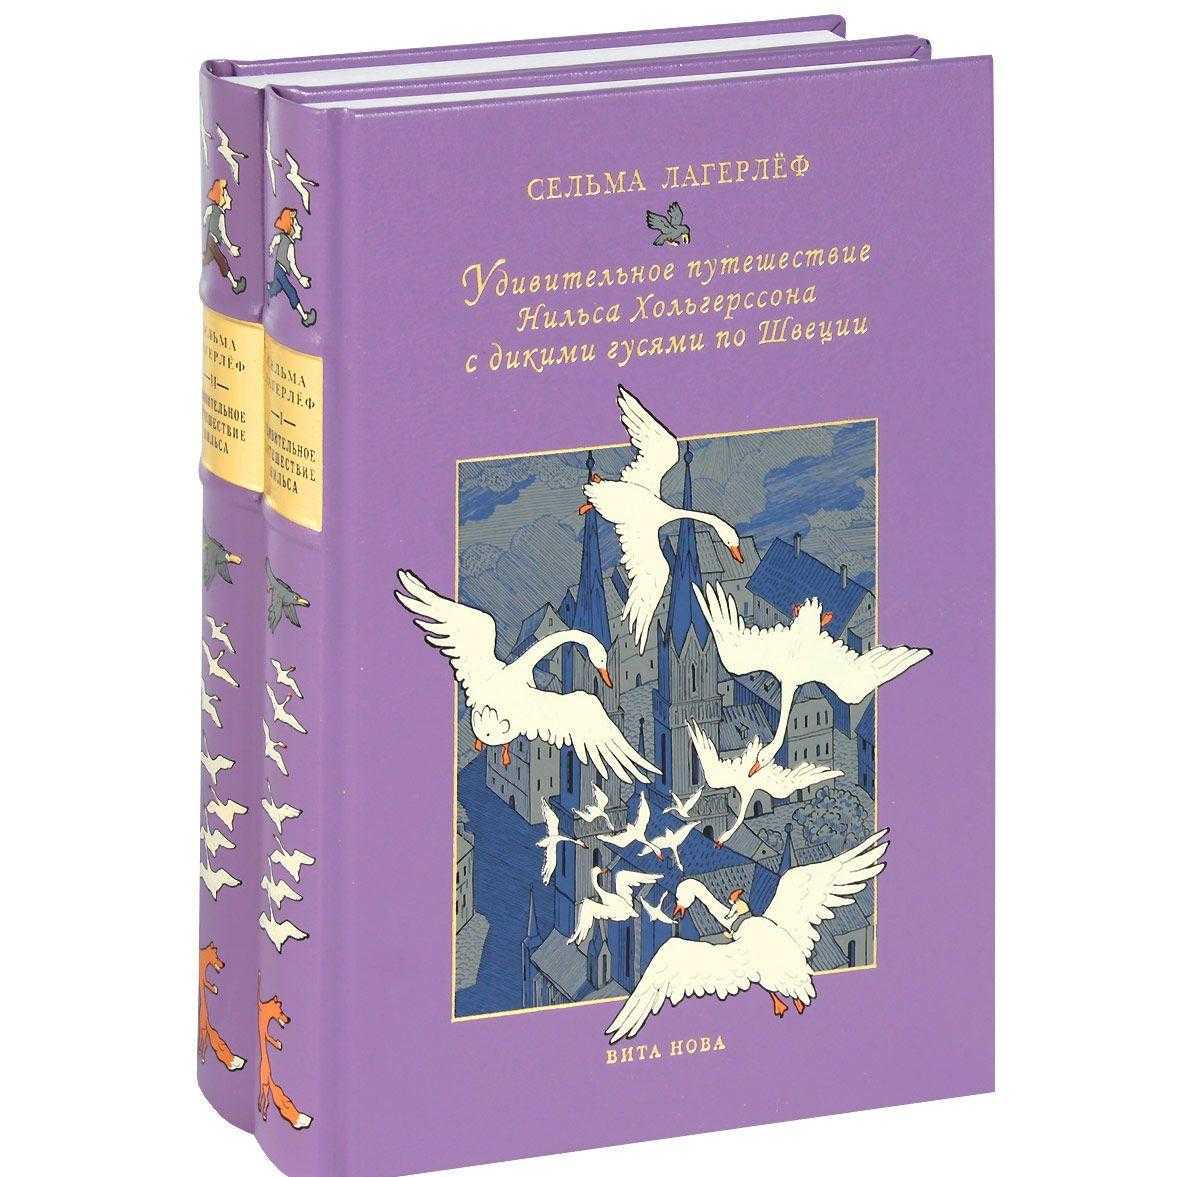 Маршрут сказки «чудесное путешествие нильса с дикими гусями» | портал «европульс»